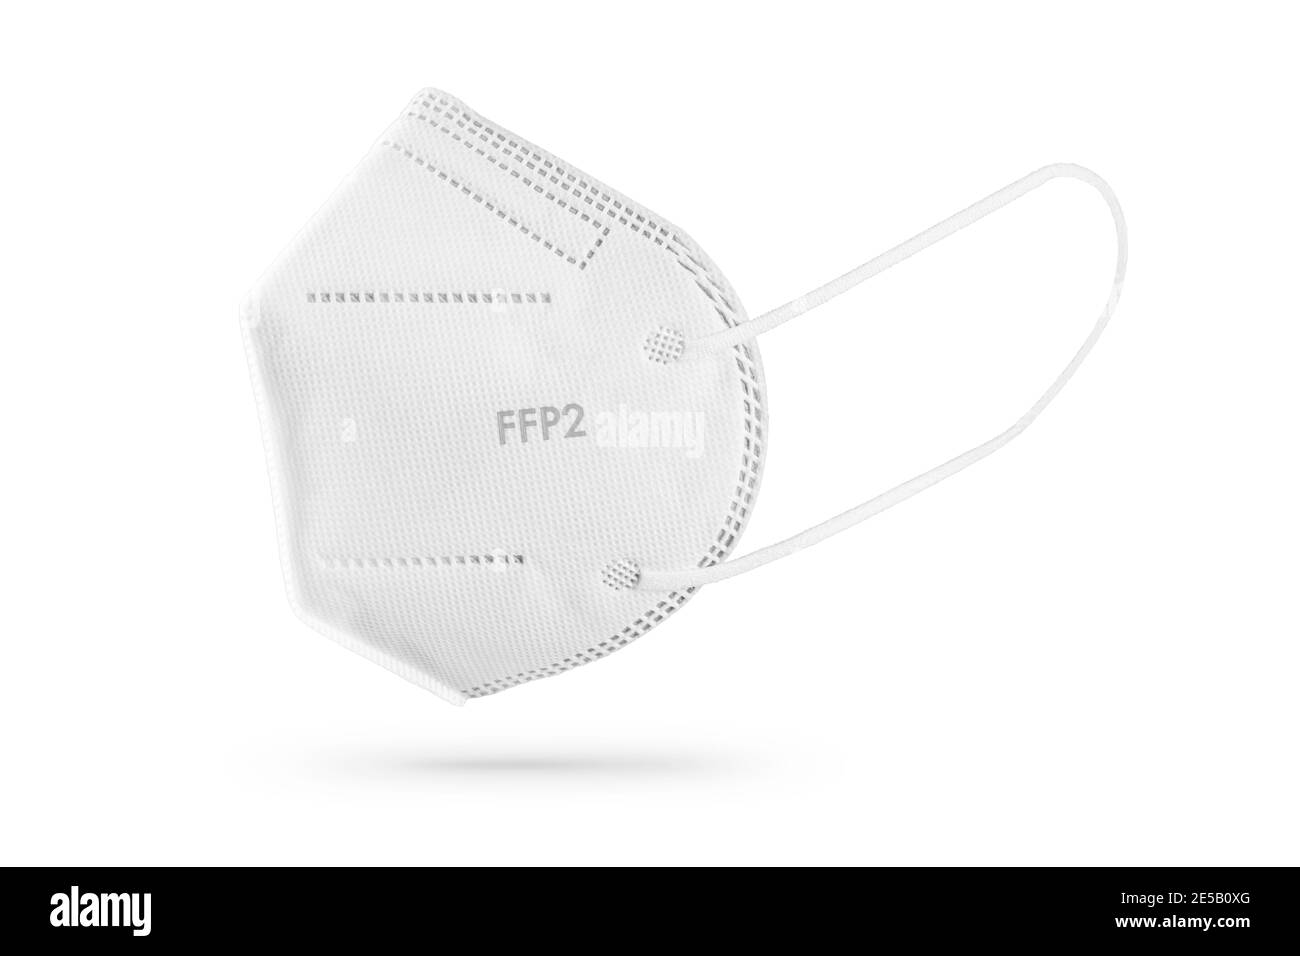 Maschera facciale FFP2 isolata su sfondo bianco. Dispositivi di protezione individuale contro il coronavirus Covid-19 Foto Stock